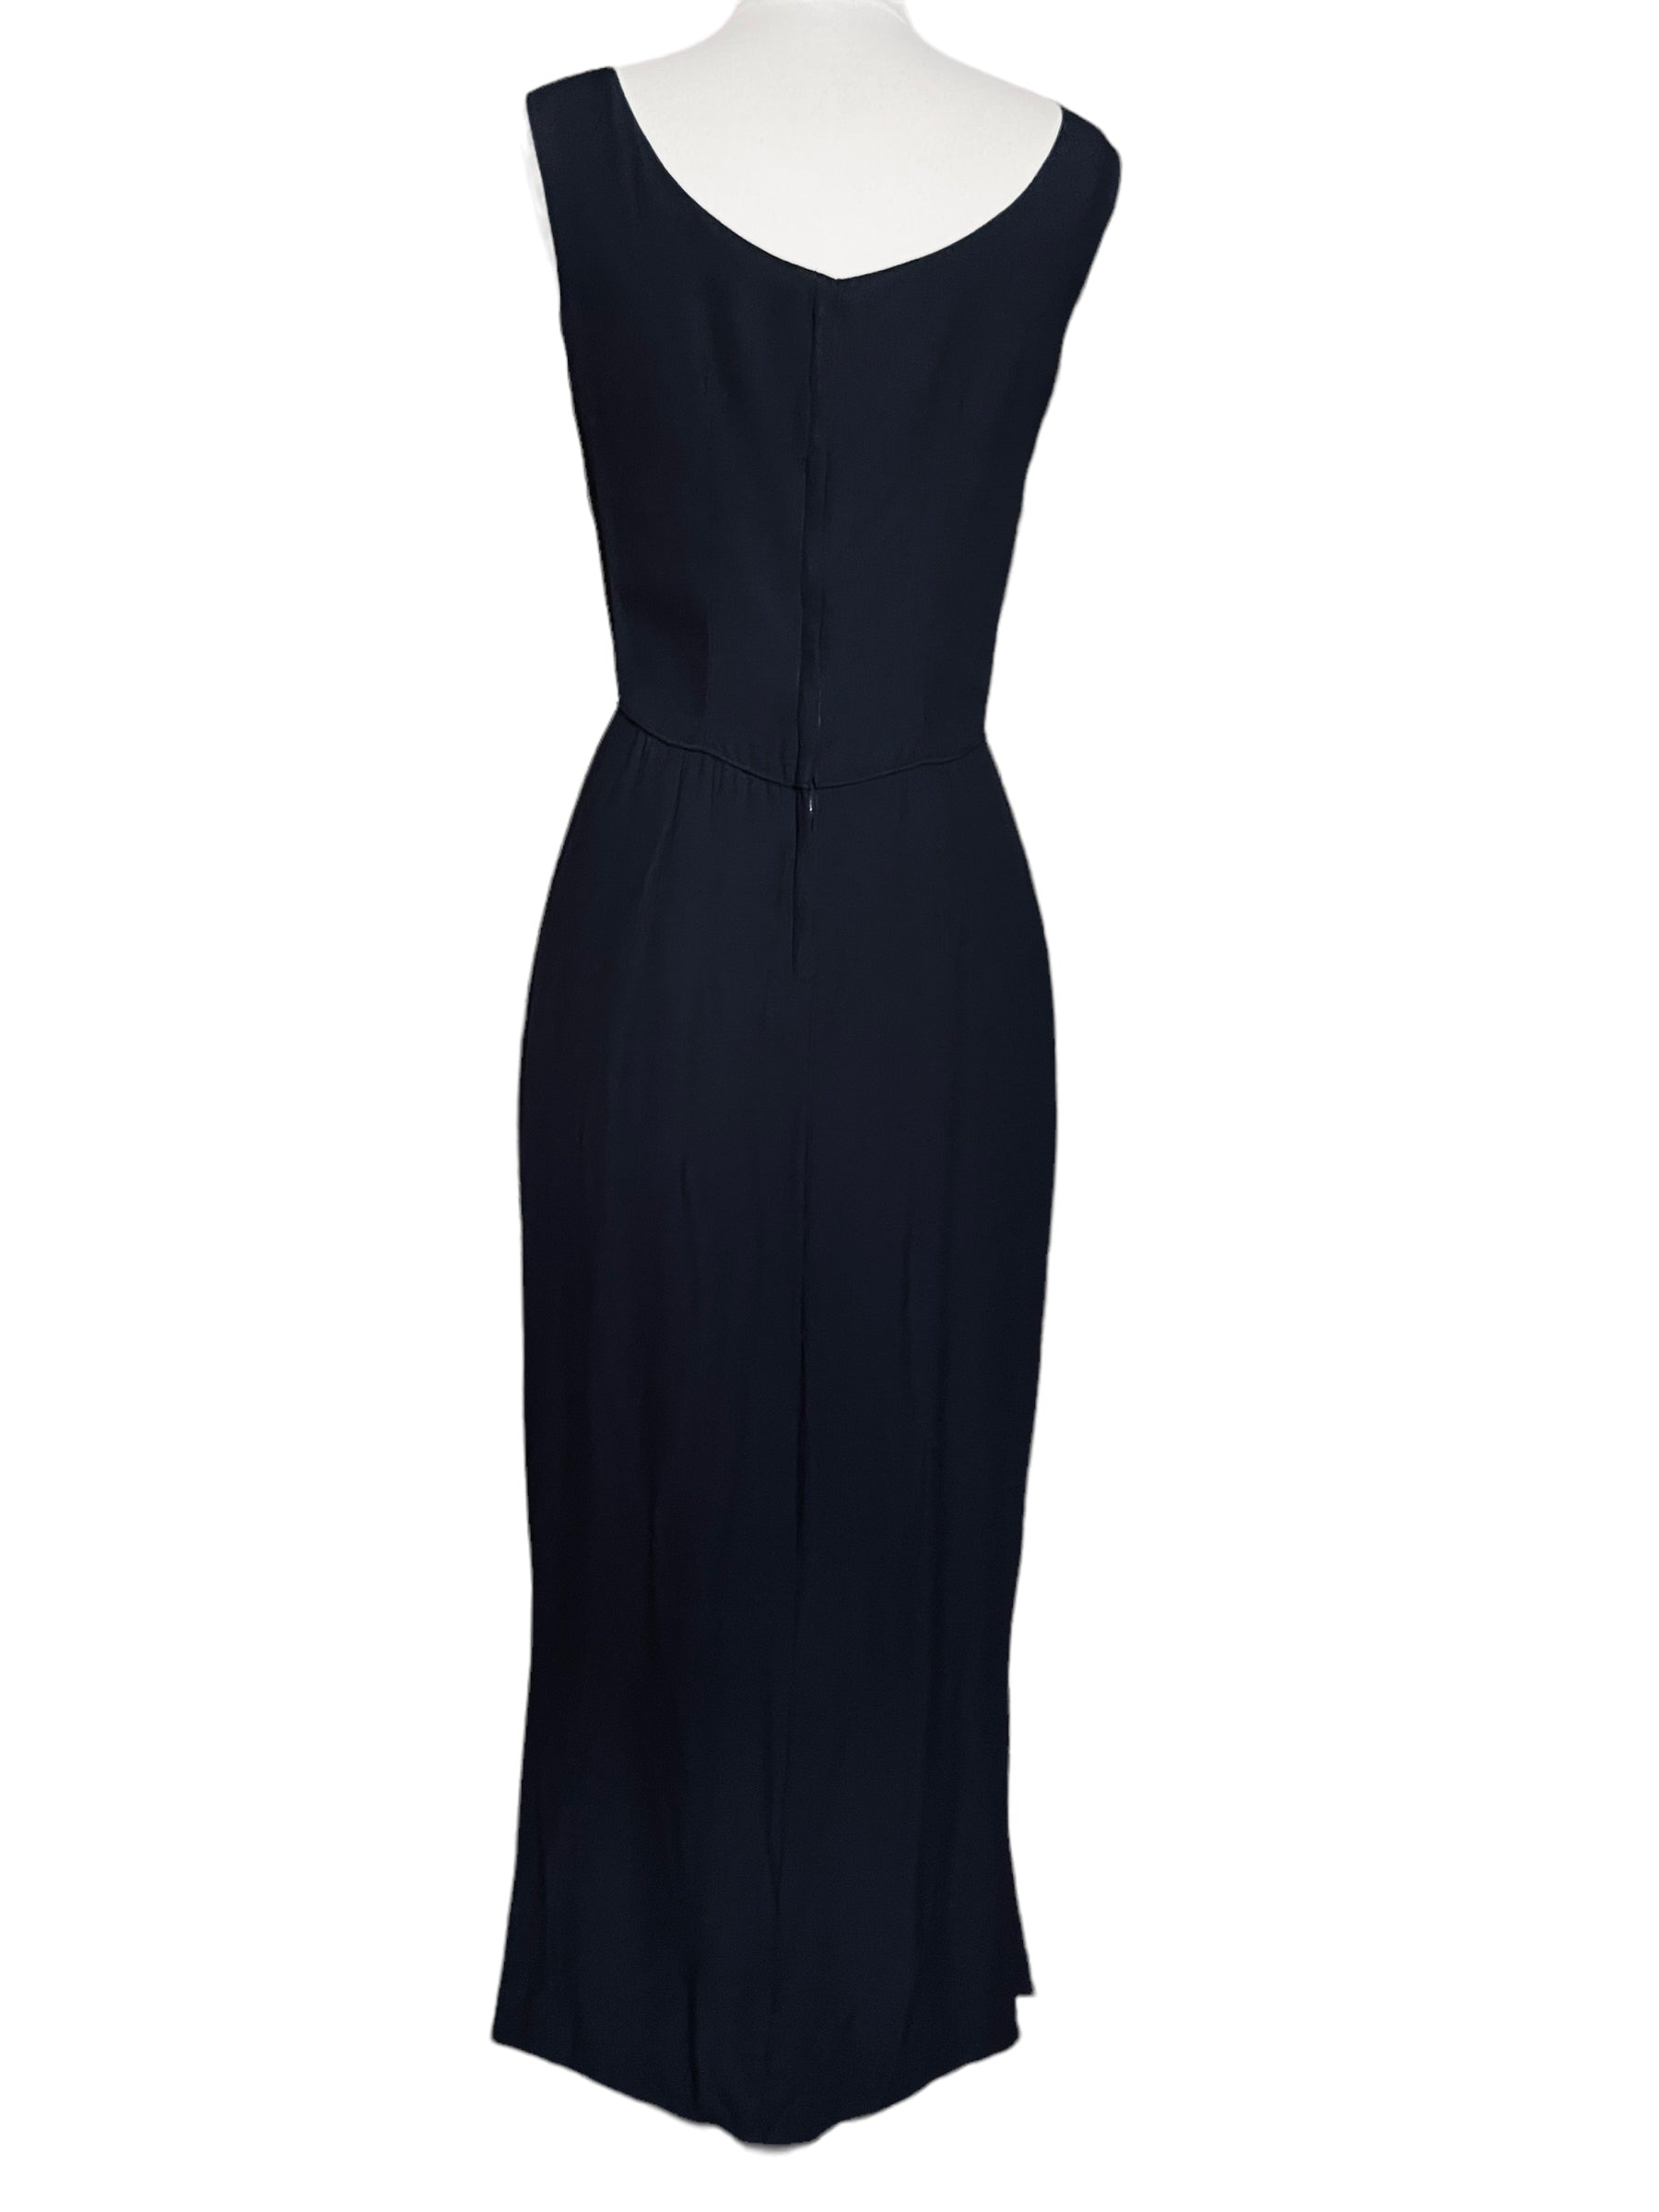 Full back view of Vintage 1950s Alfred Werber Black Maxi Dress |  Barn Owl Vintage | Seattle Vintage Dresses